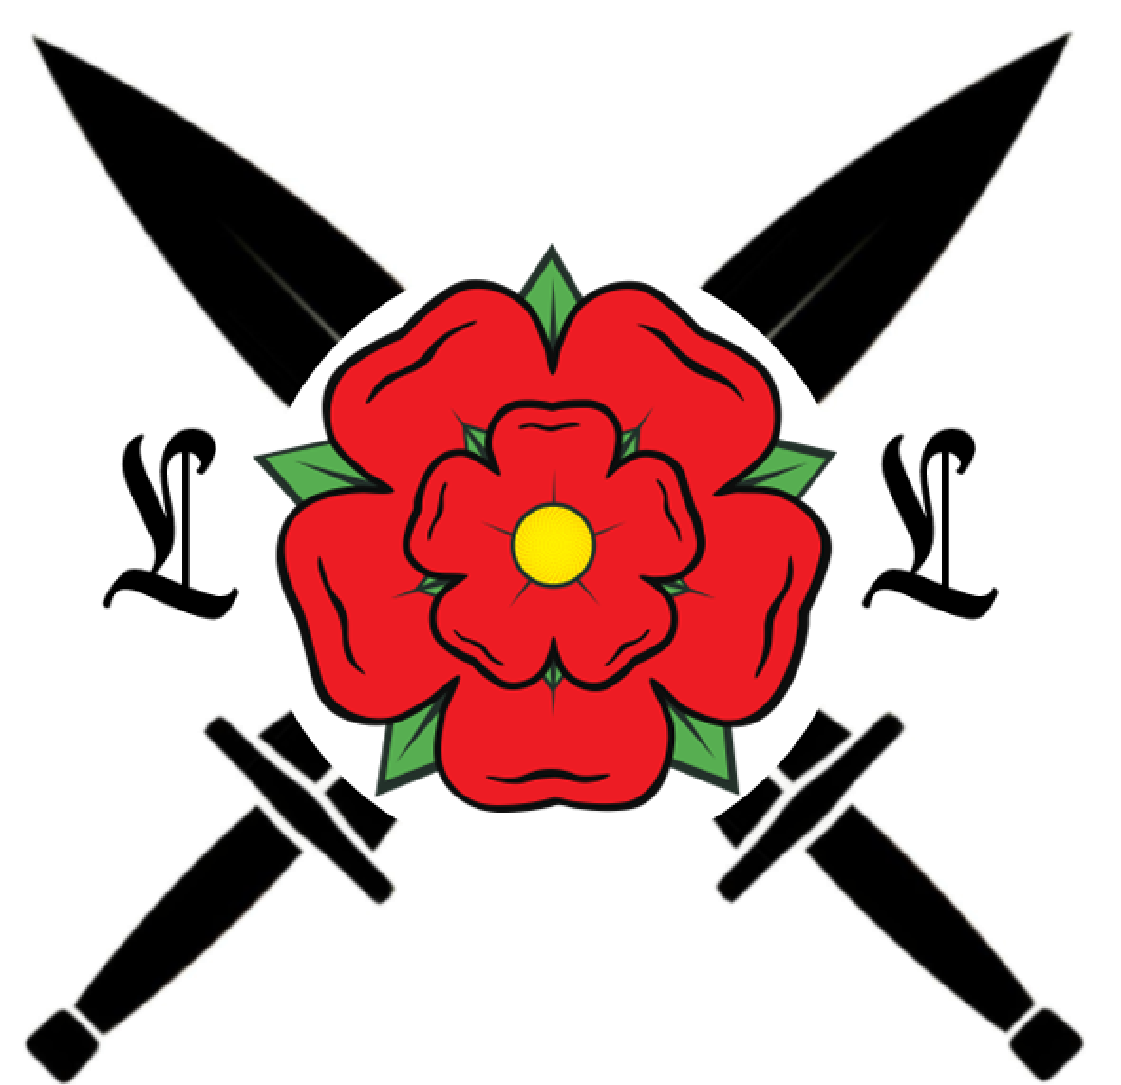 Lancashire Legion